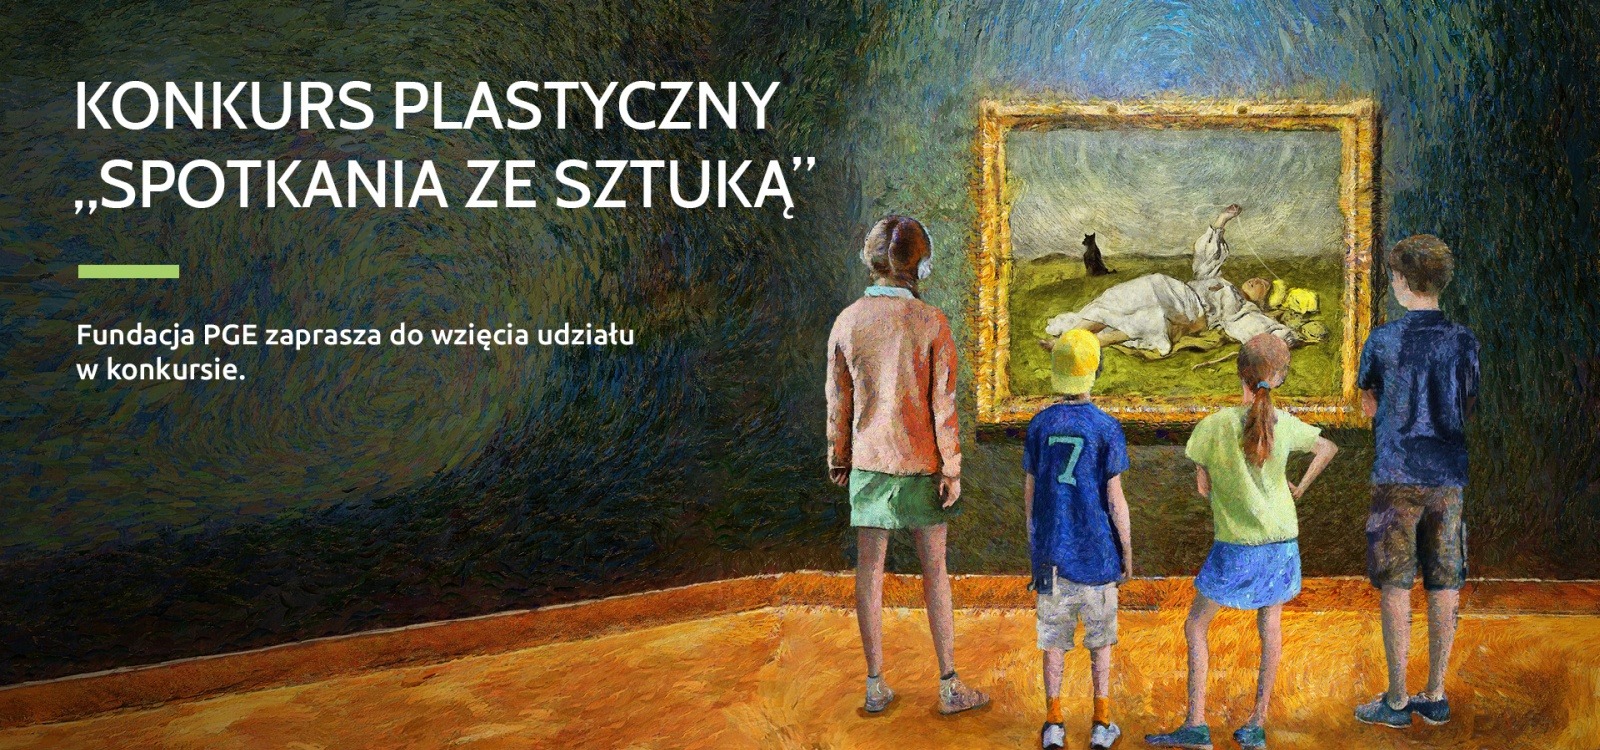 Infografika Konkurs Plastyczny "Spotkania ze sztuką" czworo dzieci stoi przed obrazem Józefa Chełmońskiego pt. "Babie lato"